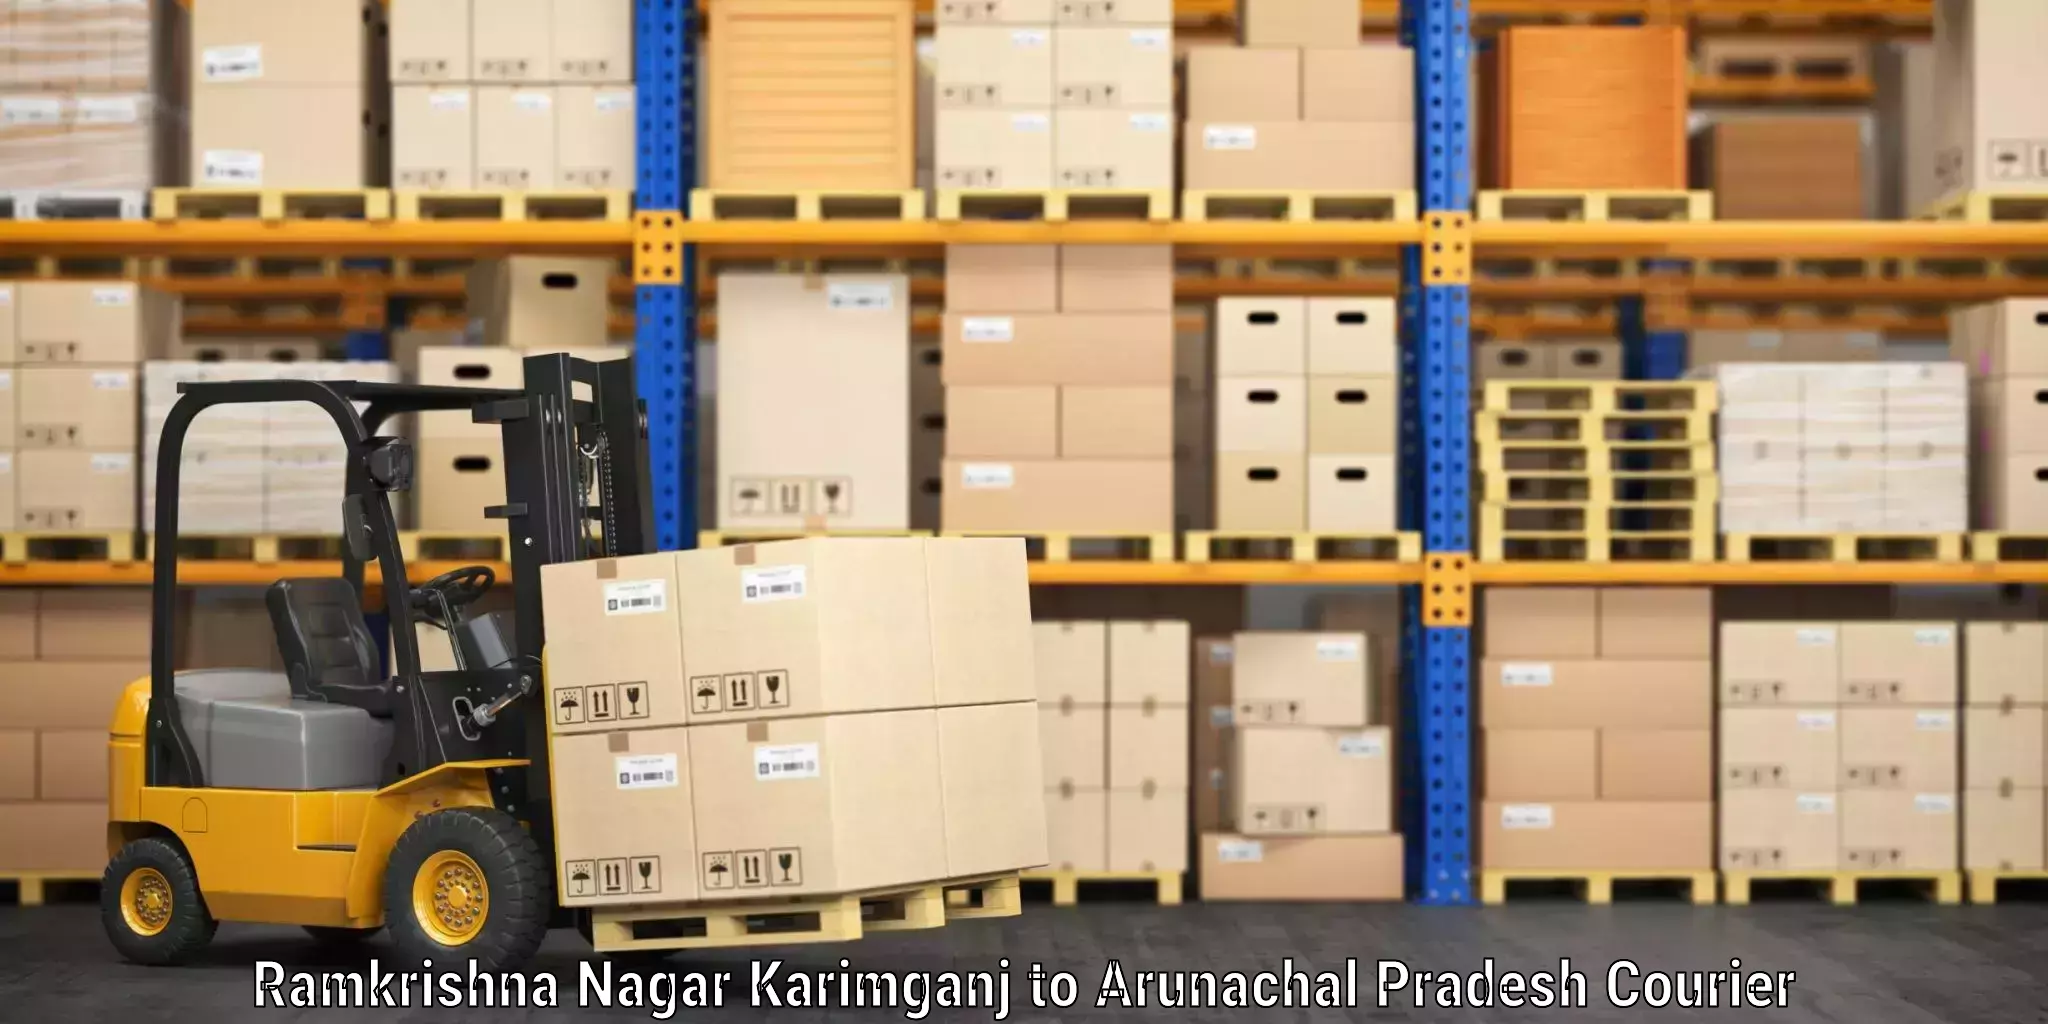 Baggage shipping schedule Ramkrishna Nagar Karimganj to Arunachal Pradesh